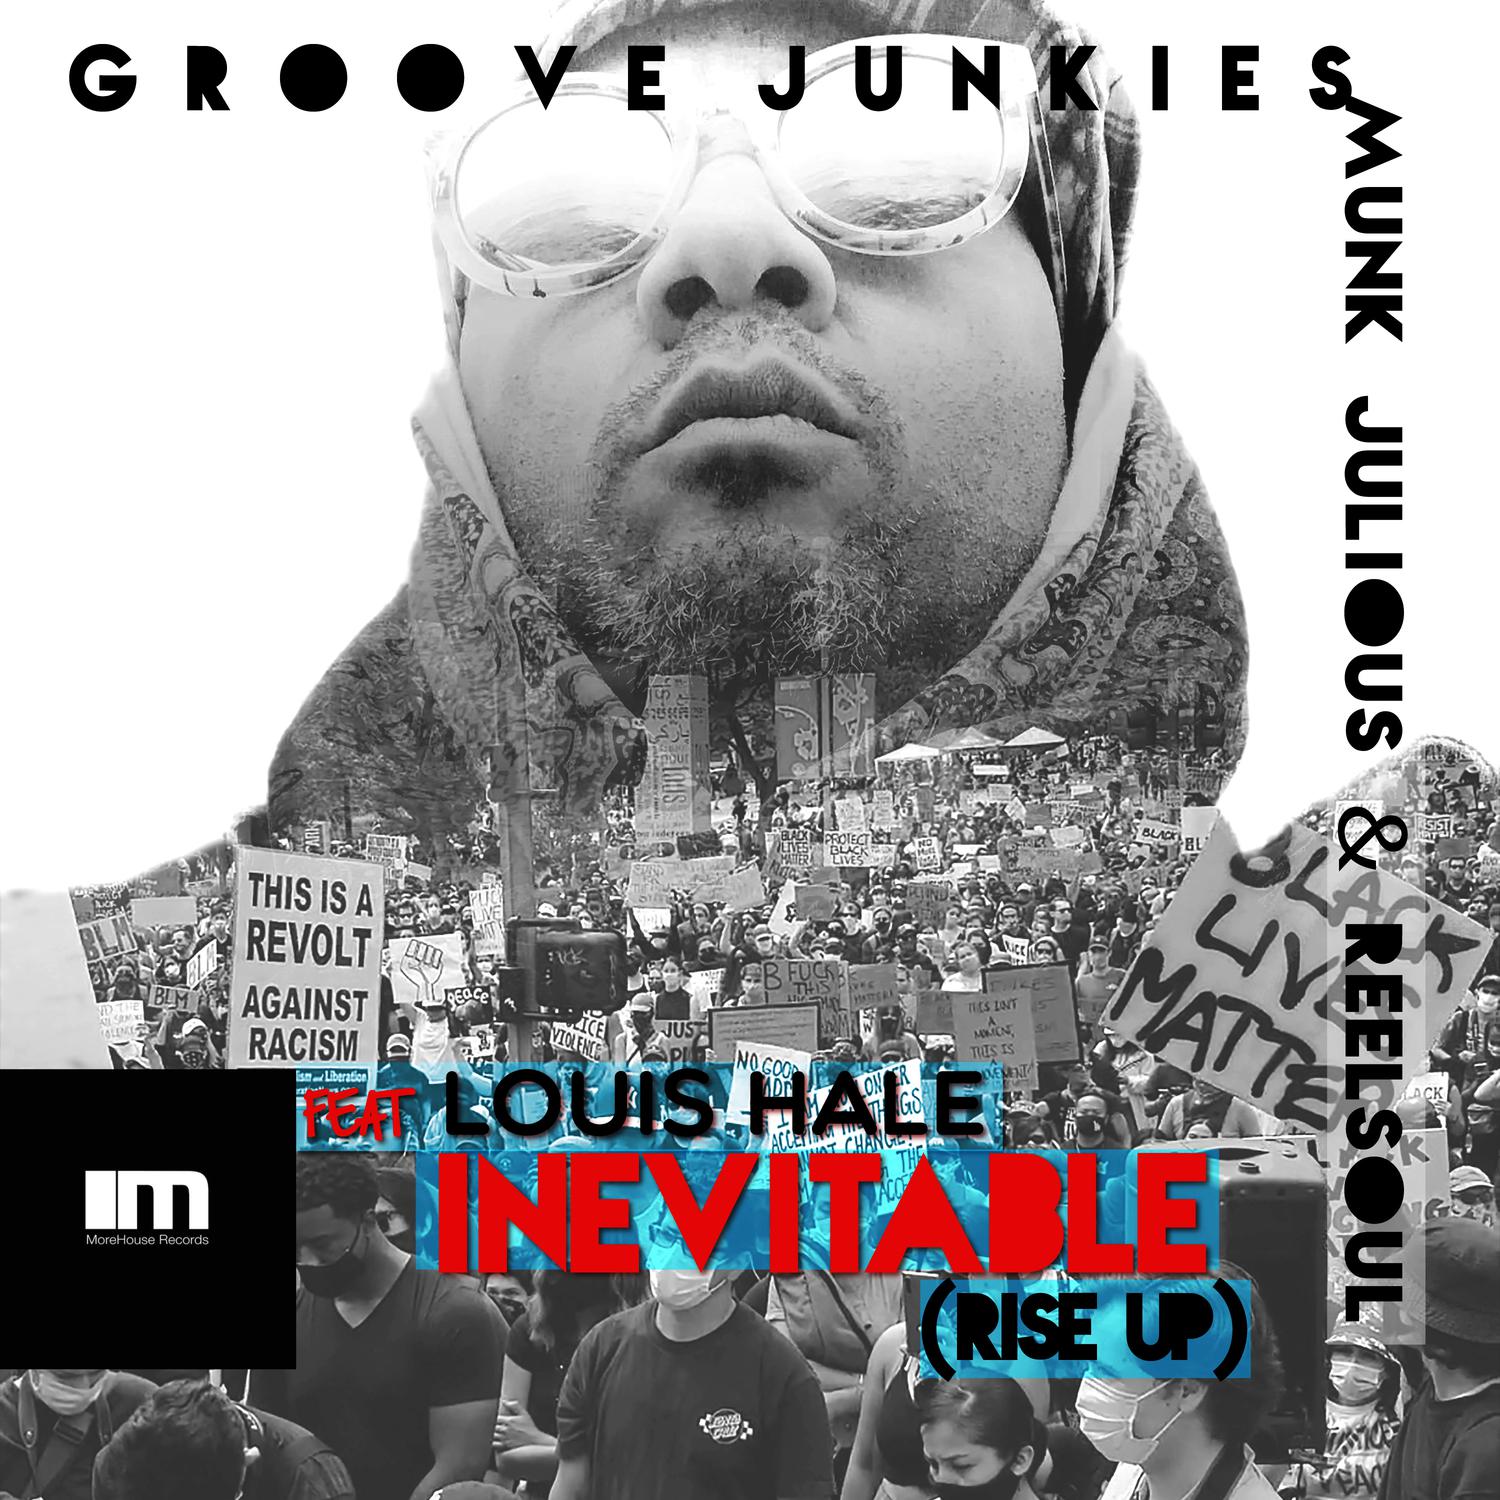 Groove Junkies - Inevitable (Rise up) (Groove Junkies, Reelsoul & Munk Julious Bass & Drum Vox)